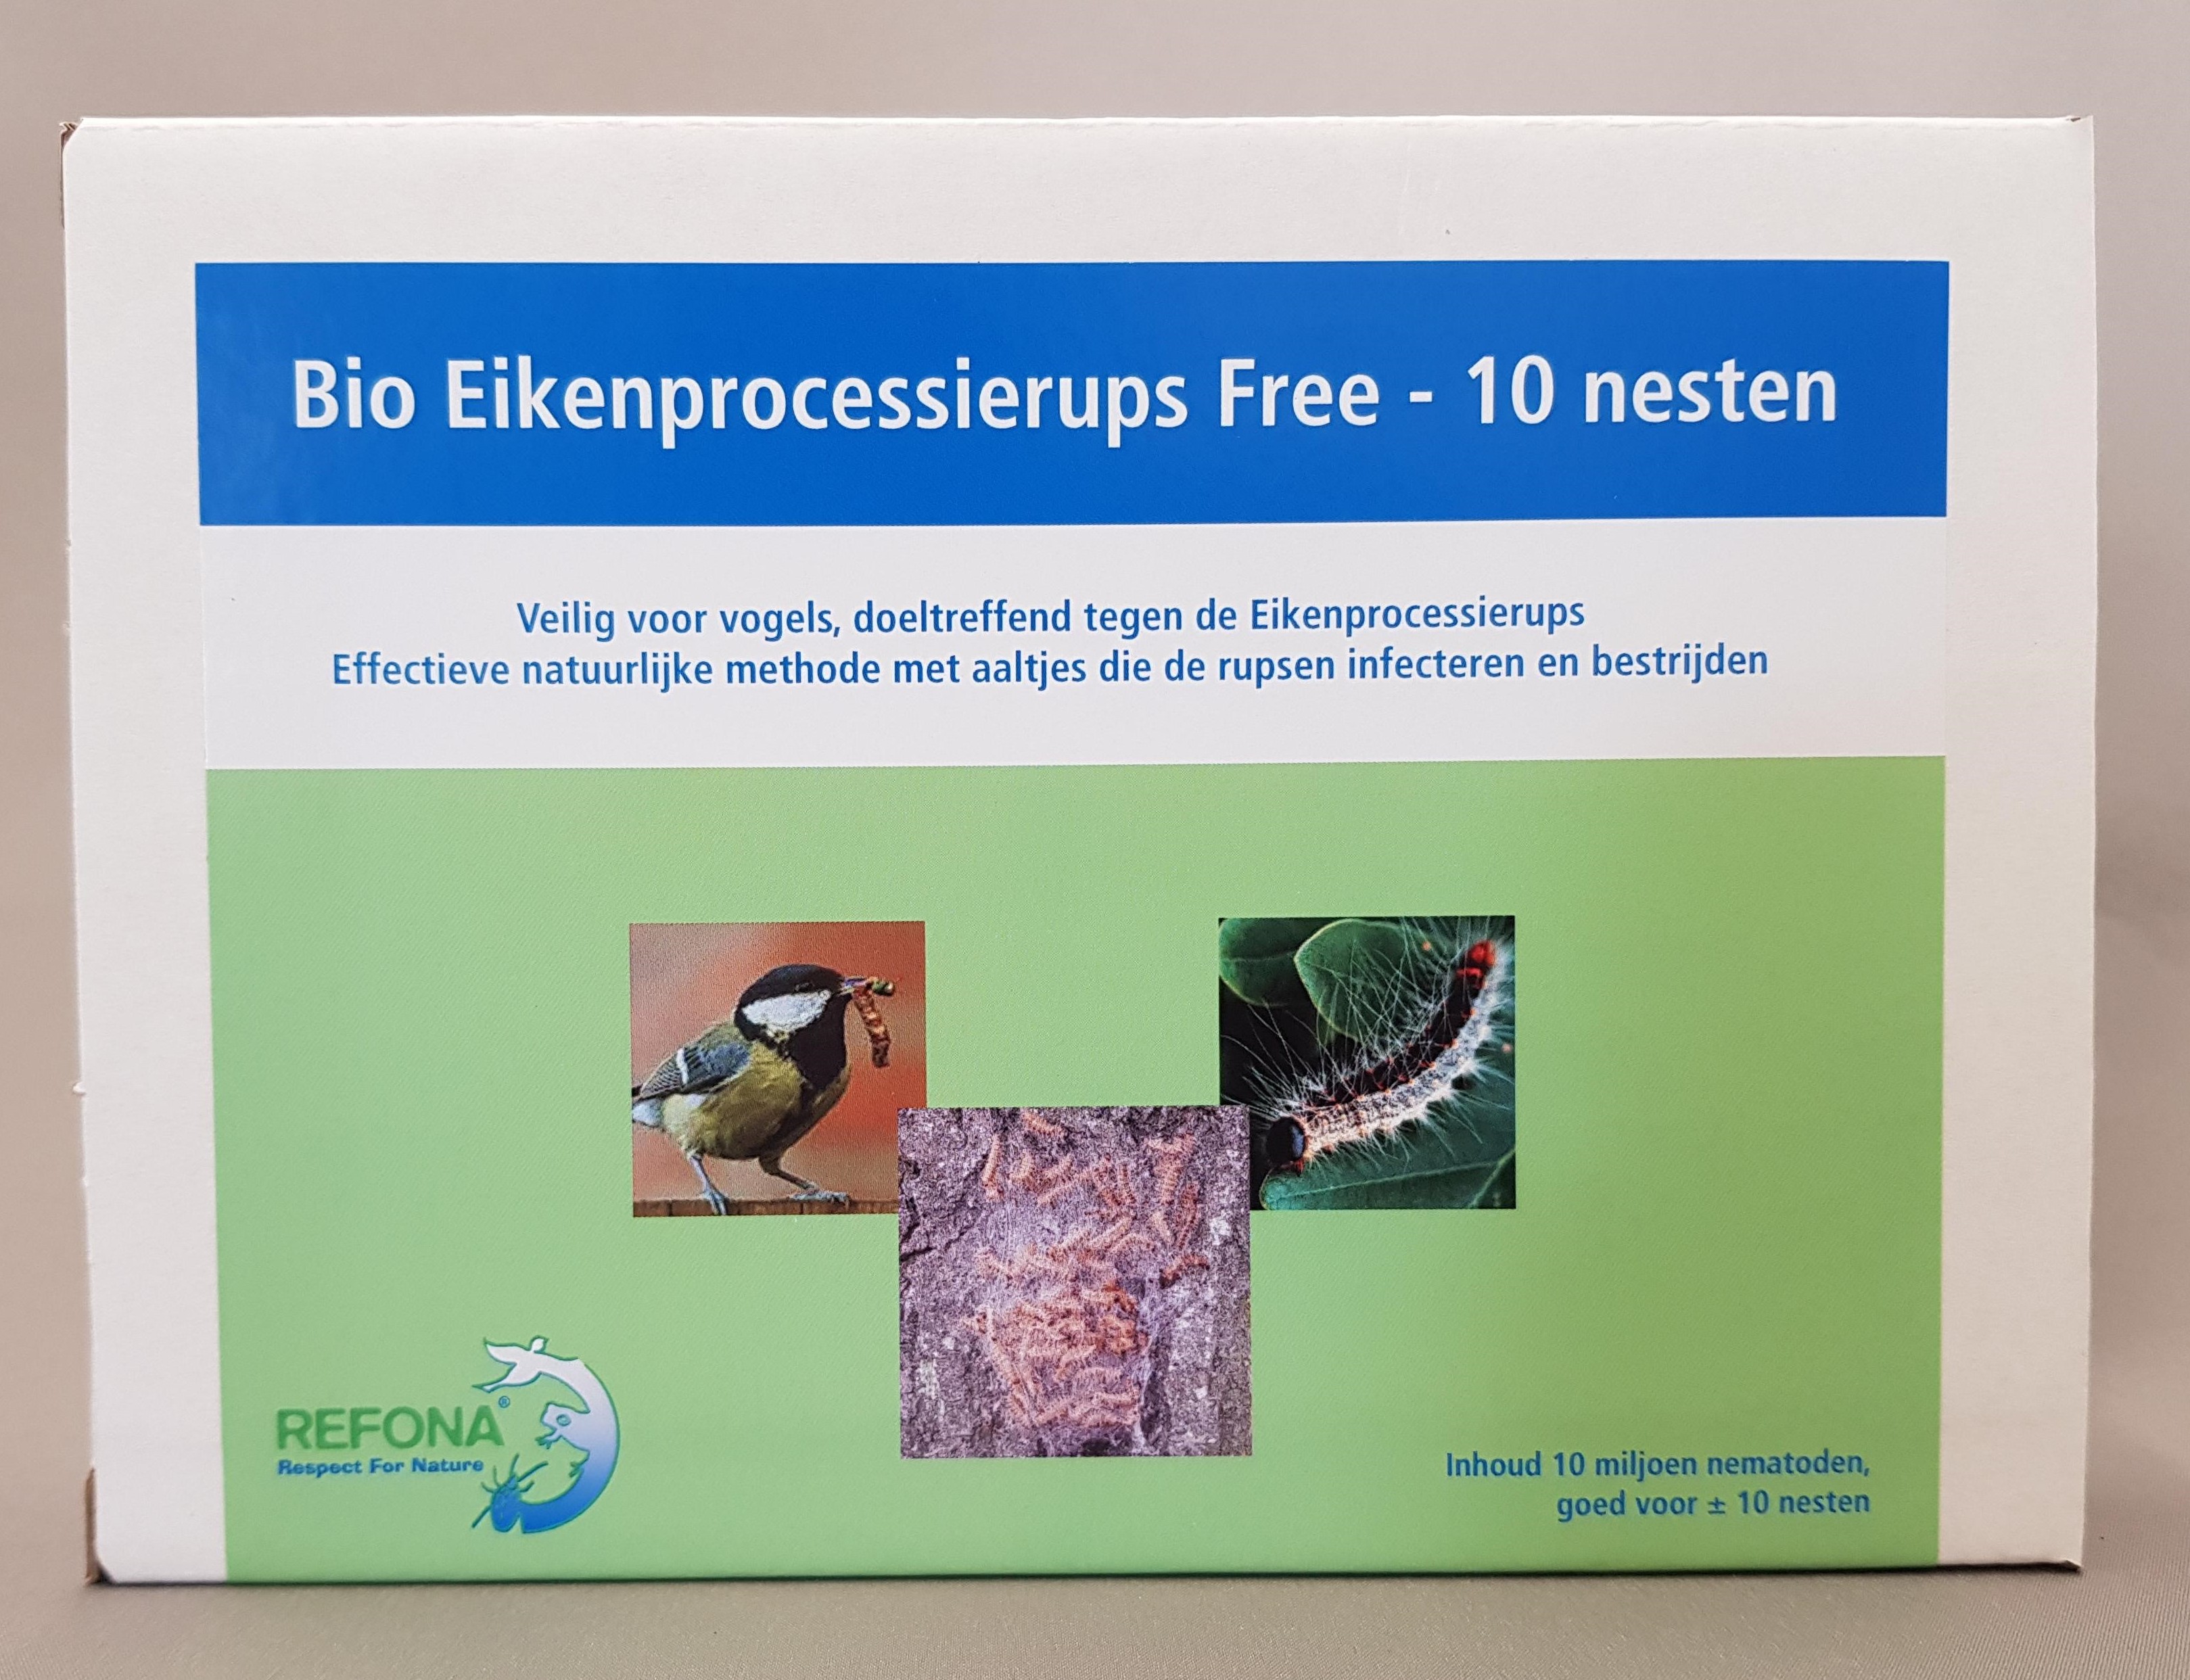 Bio Eikenprocessierups Free (10 nesten)